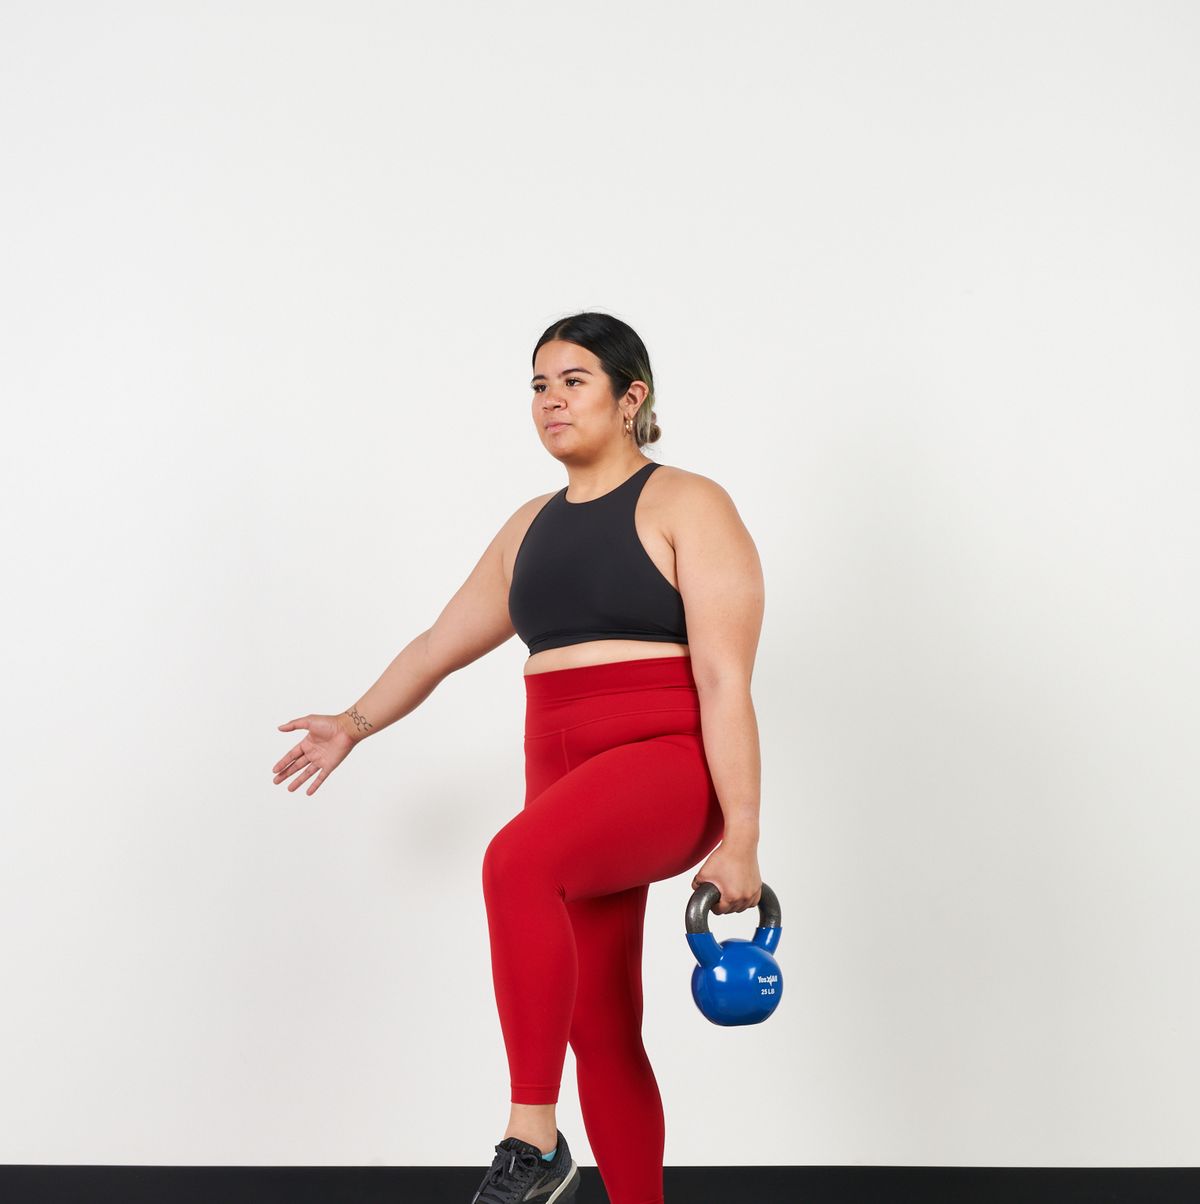 Lifting Heavier Weights? An Expert Shares the Top 5 Benefits